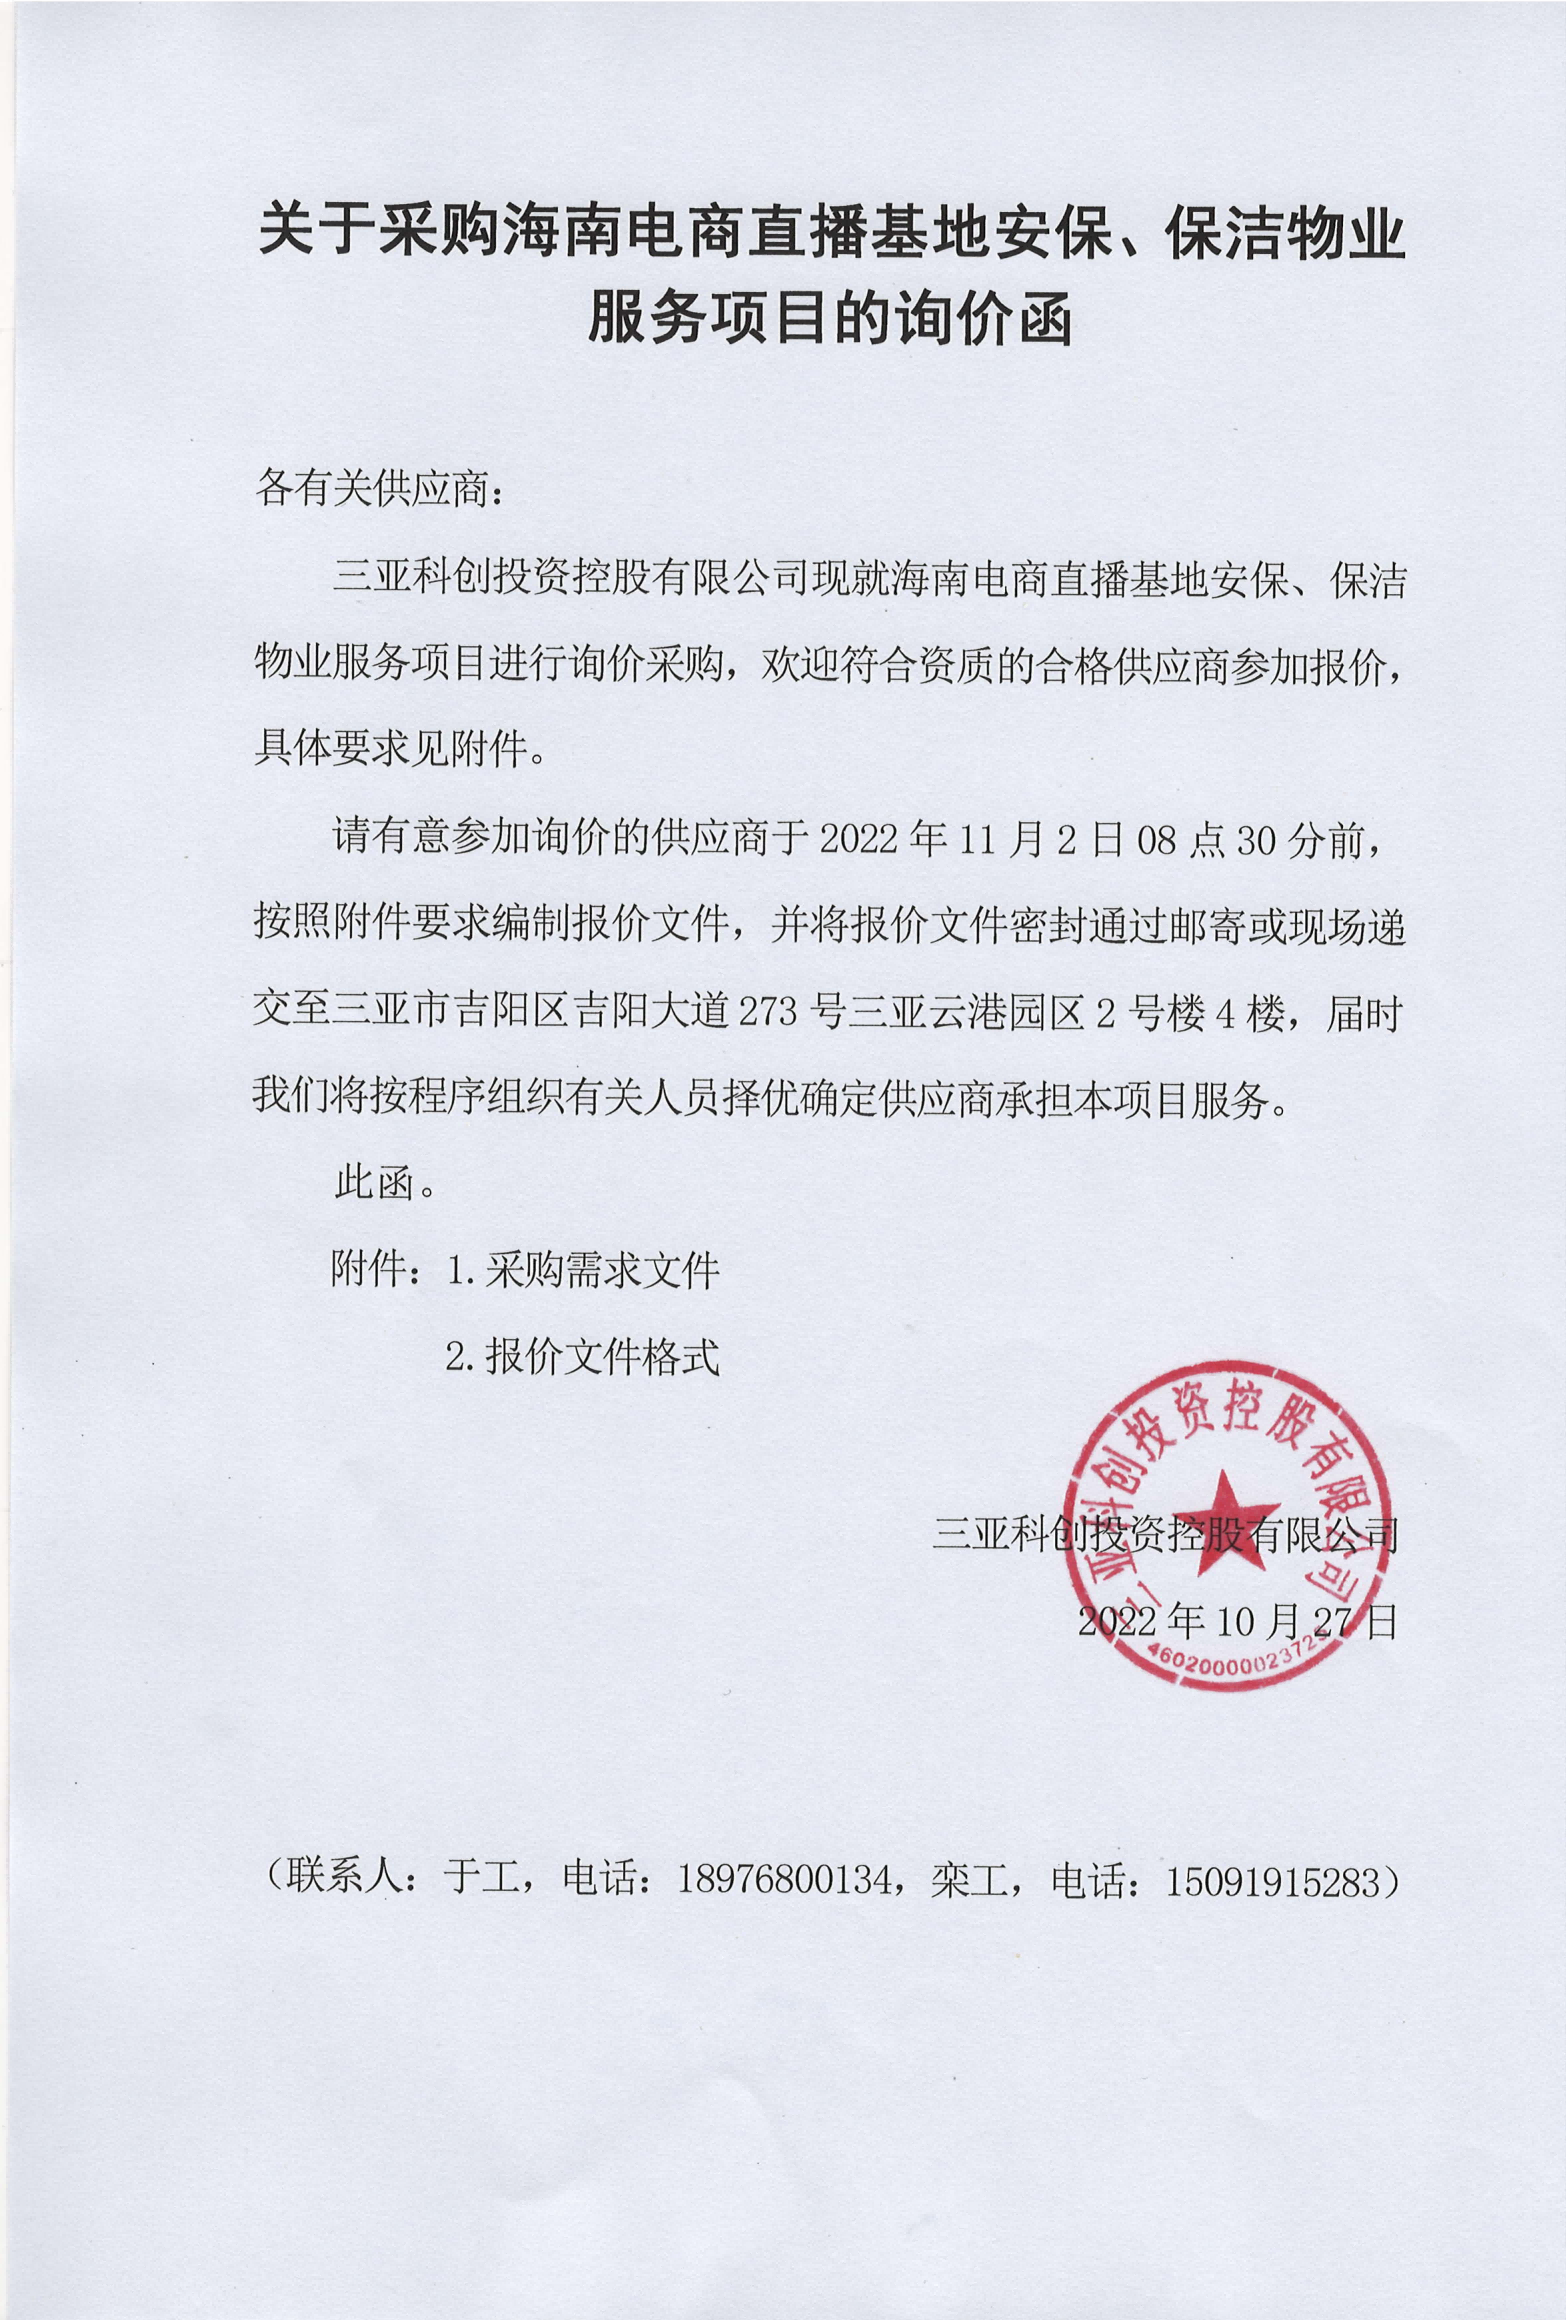 关于采购海南电商直播基地安保、保洁物业服务项目的询价函_00_看图王(1).png